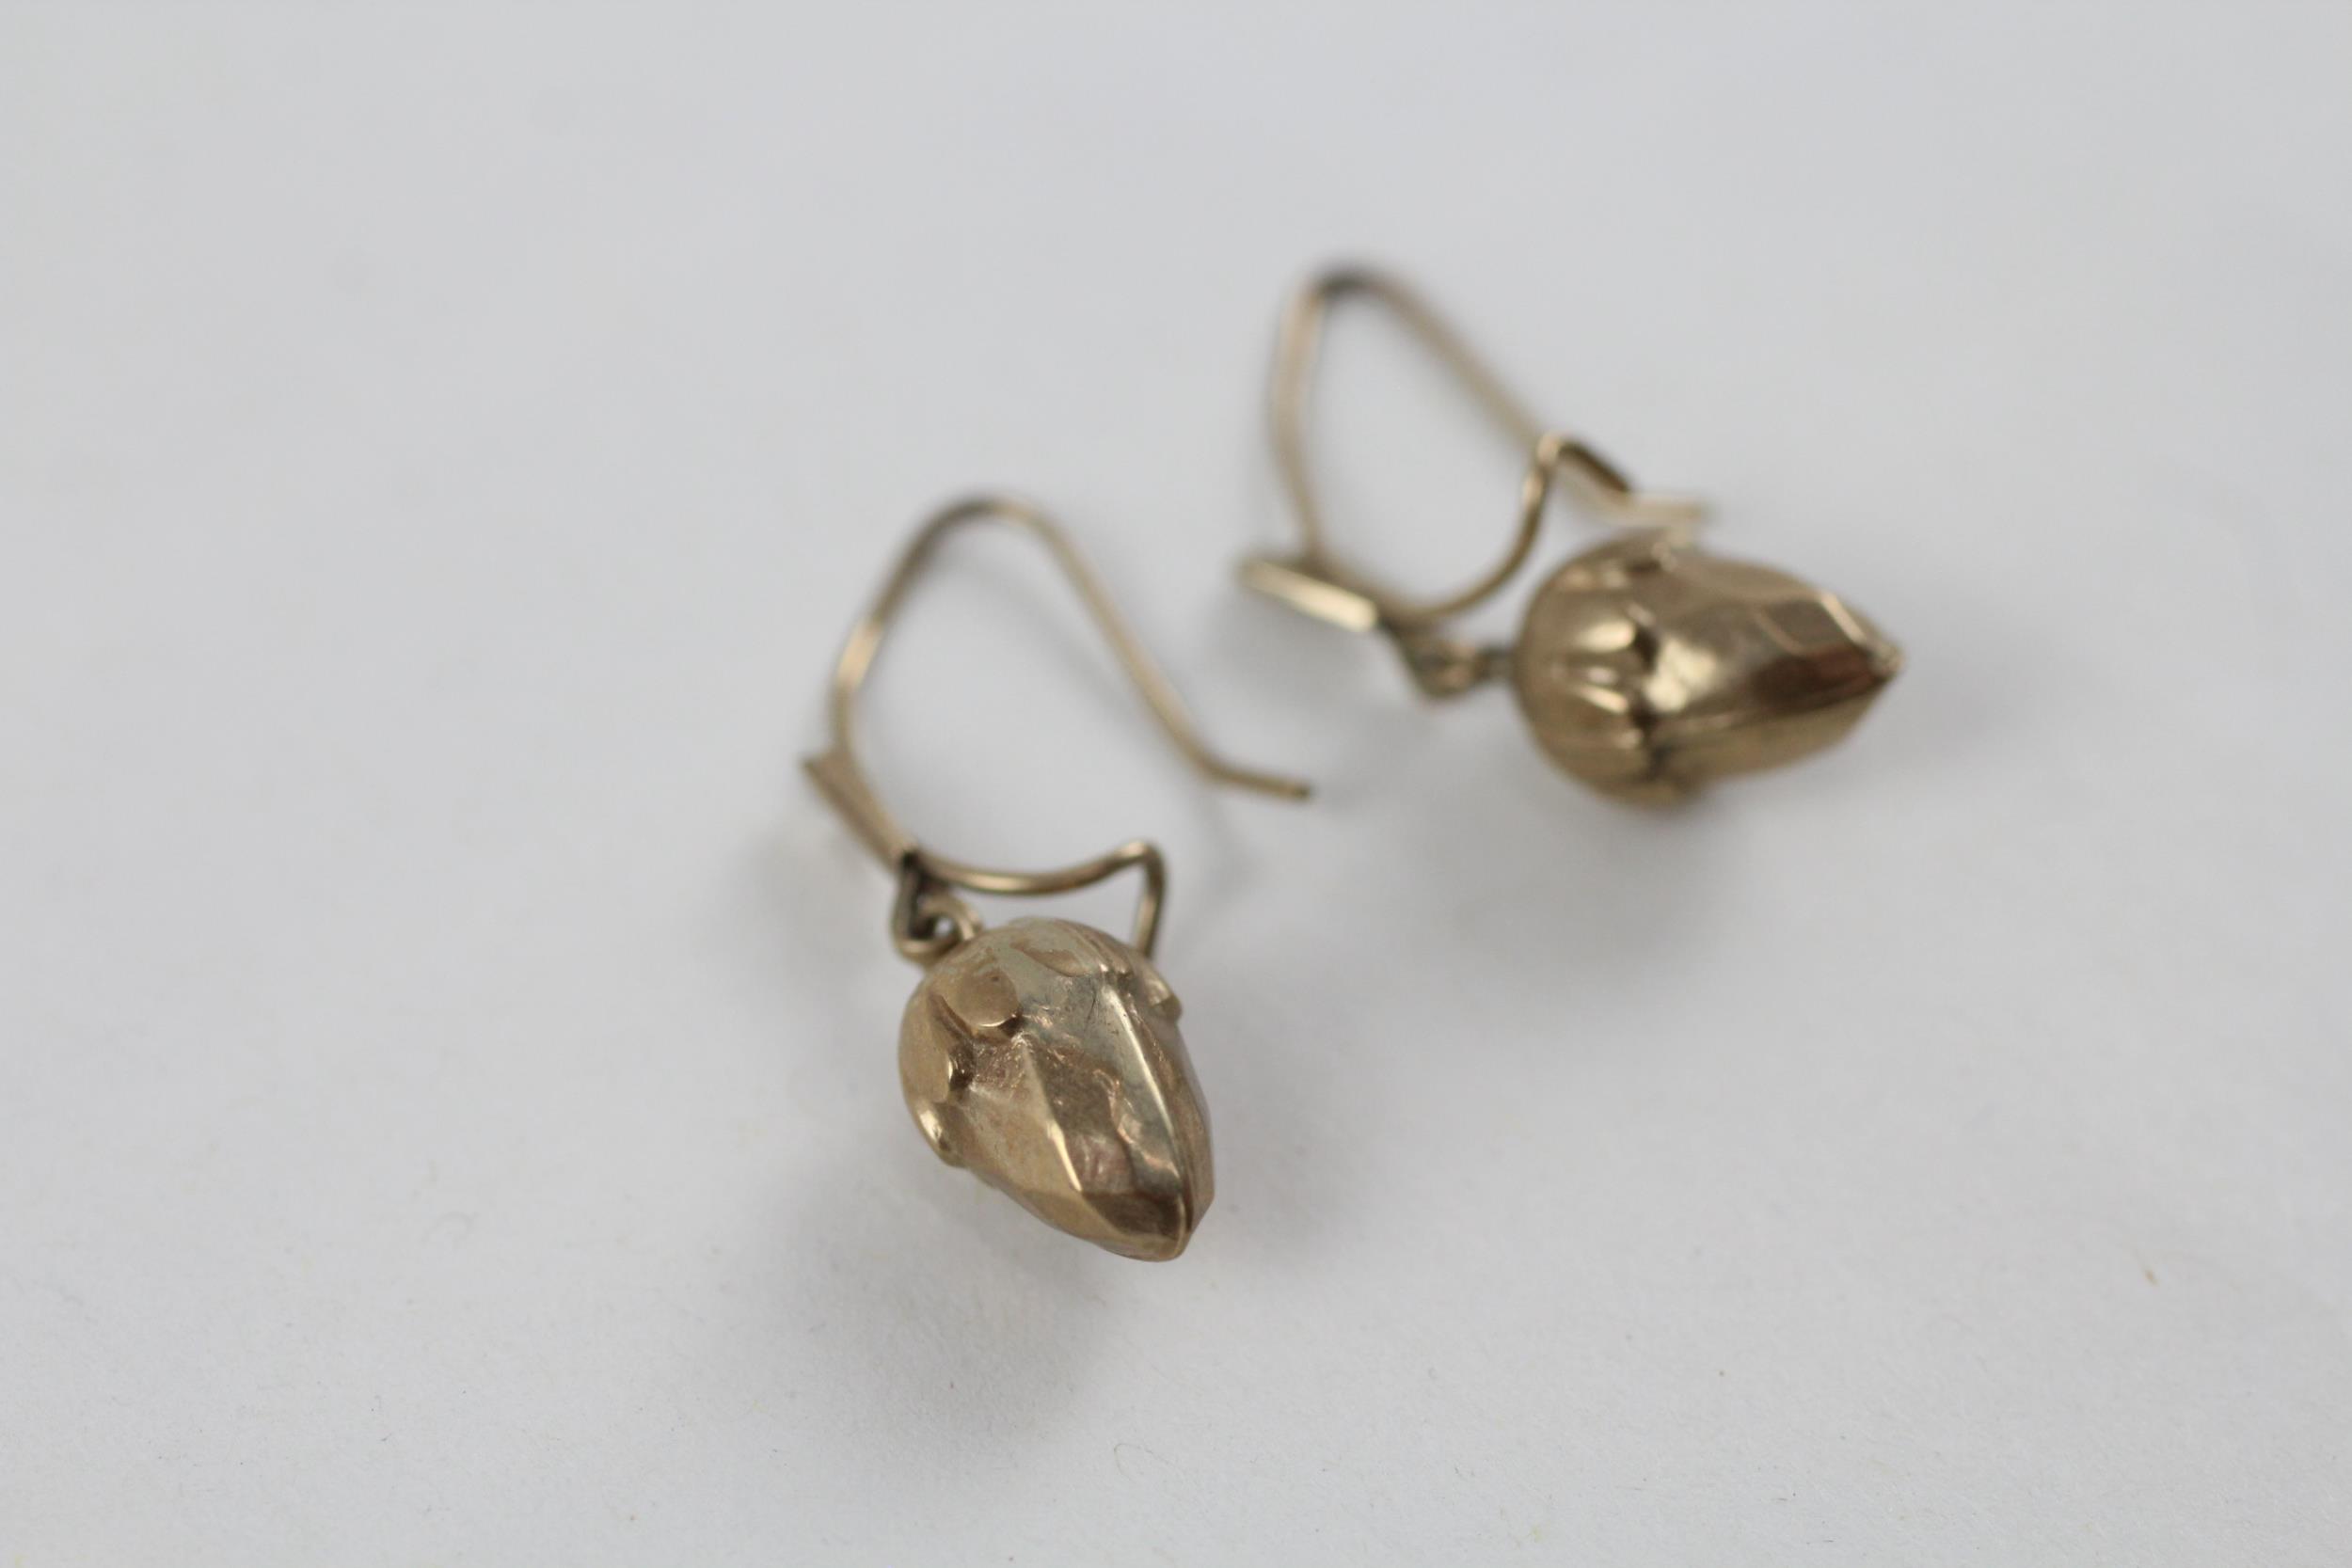 9ct gold vintage acorn drop earrings (1g) - Image 3 of 5